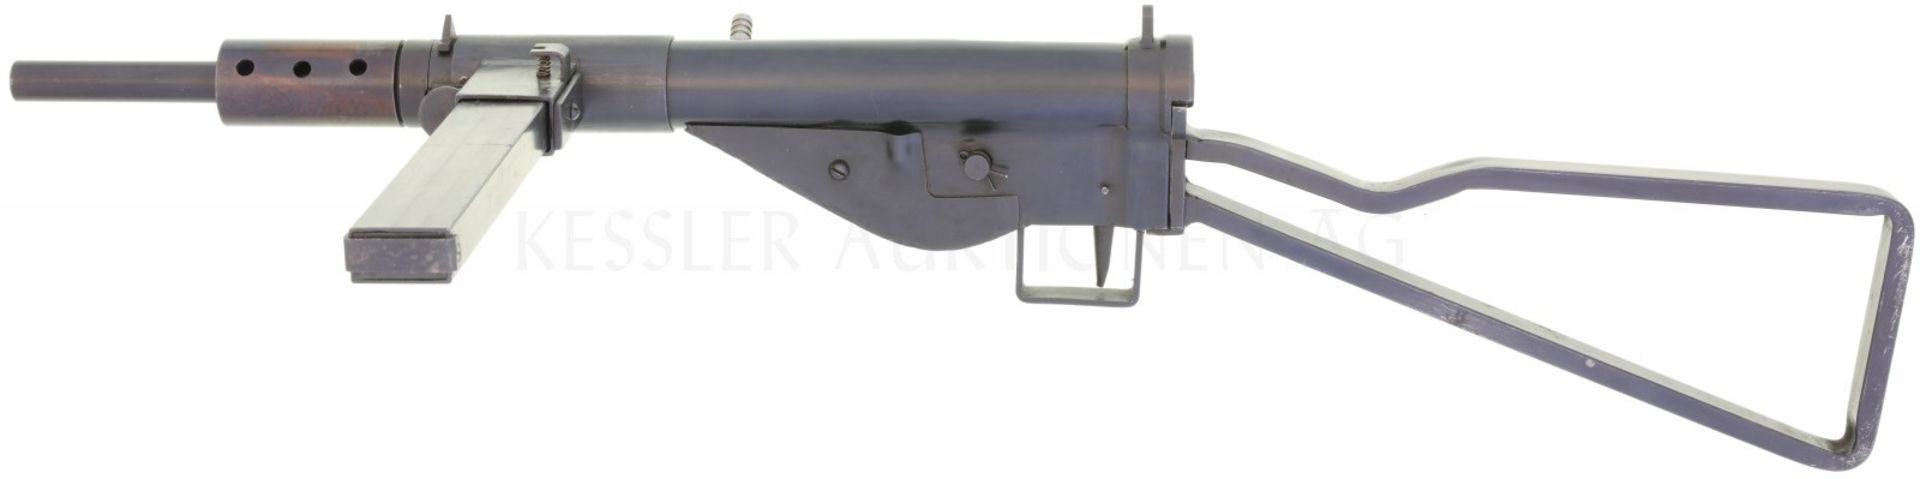 Maschinenpistole STEN Mk.II Eigenbau, Kal. 9mmP